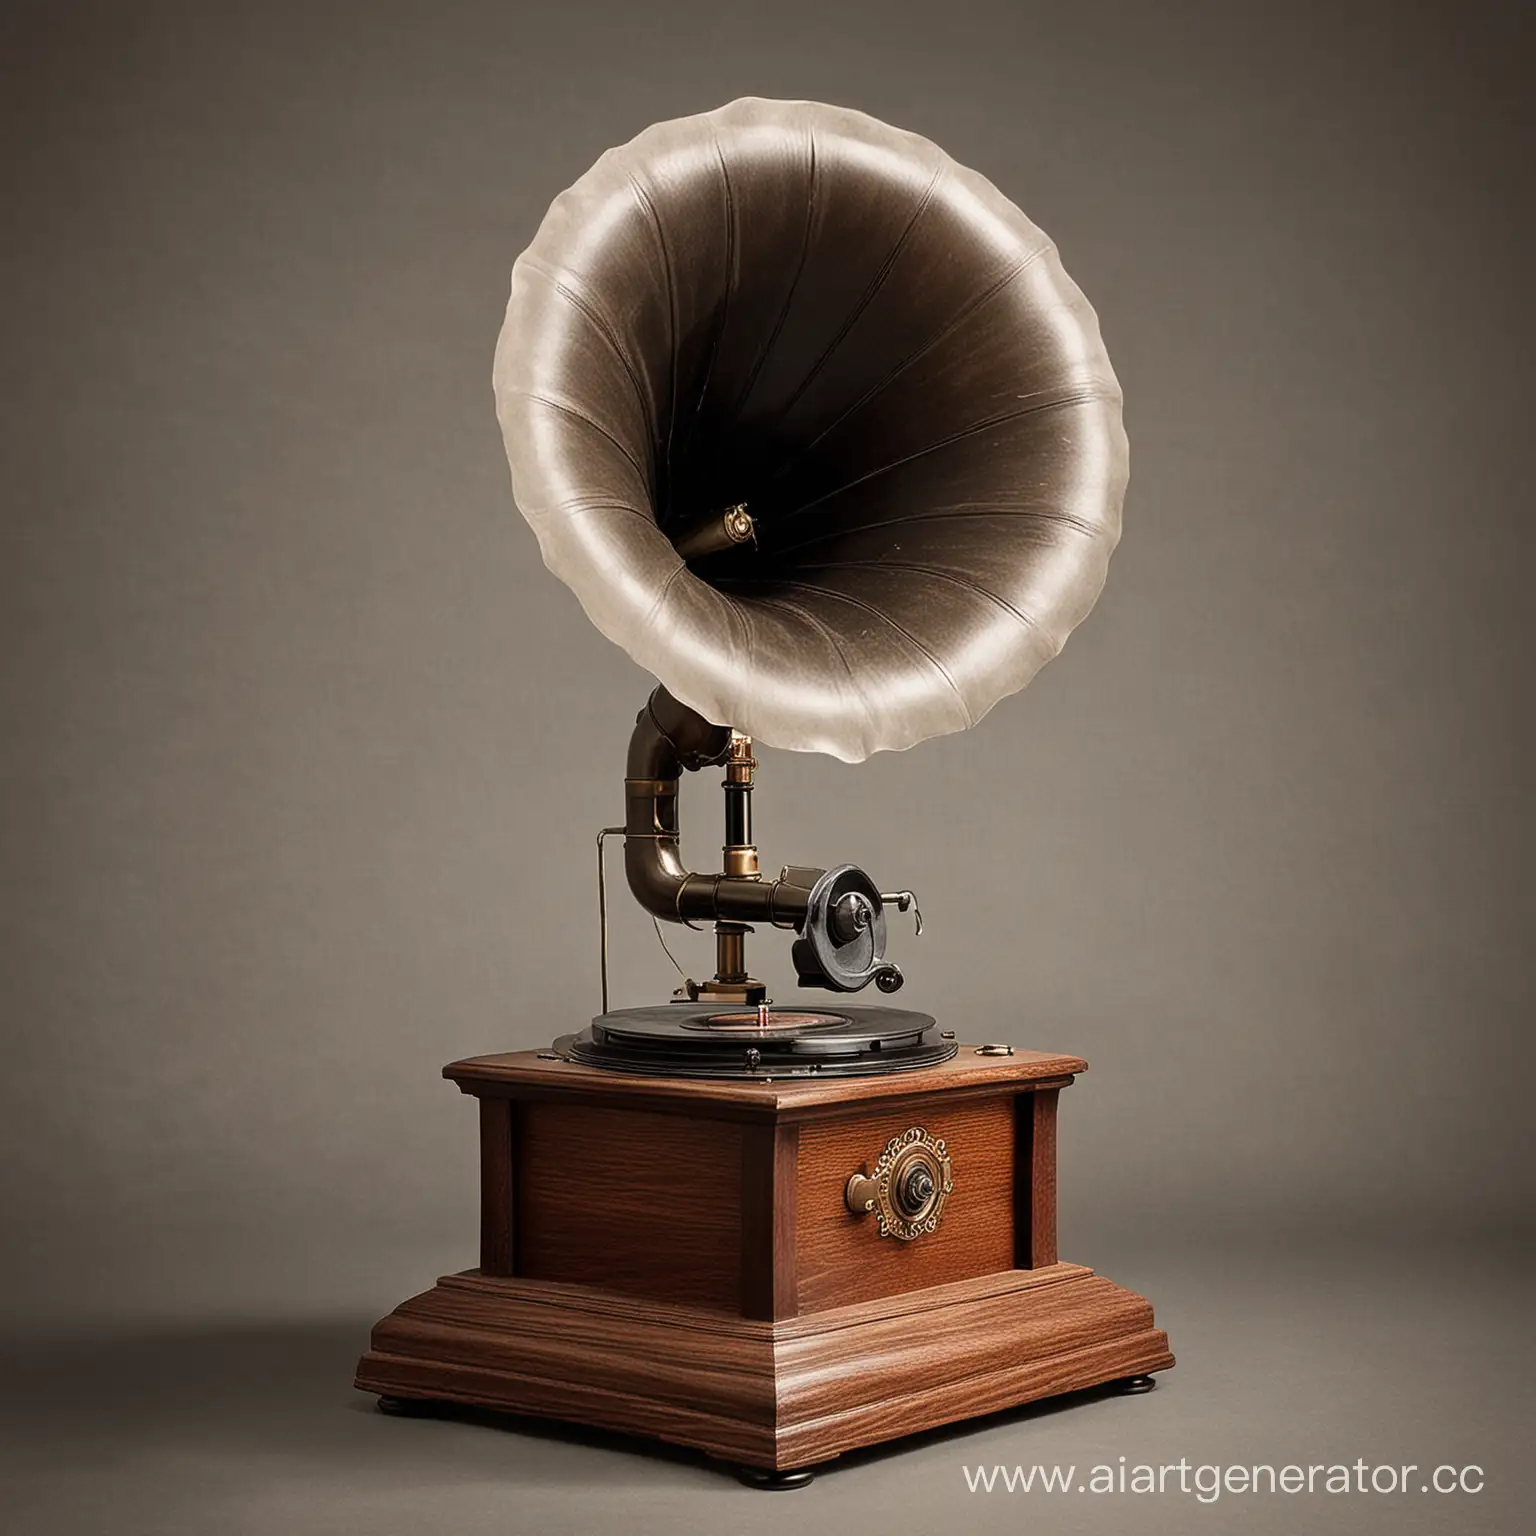 Фонограф-первый прибор для записи и воспроизведения звука. Изобретён Томасом Эдисоном, представлен 21 ноября 1877 года.